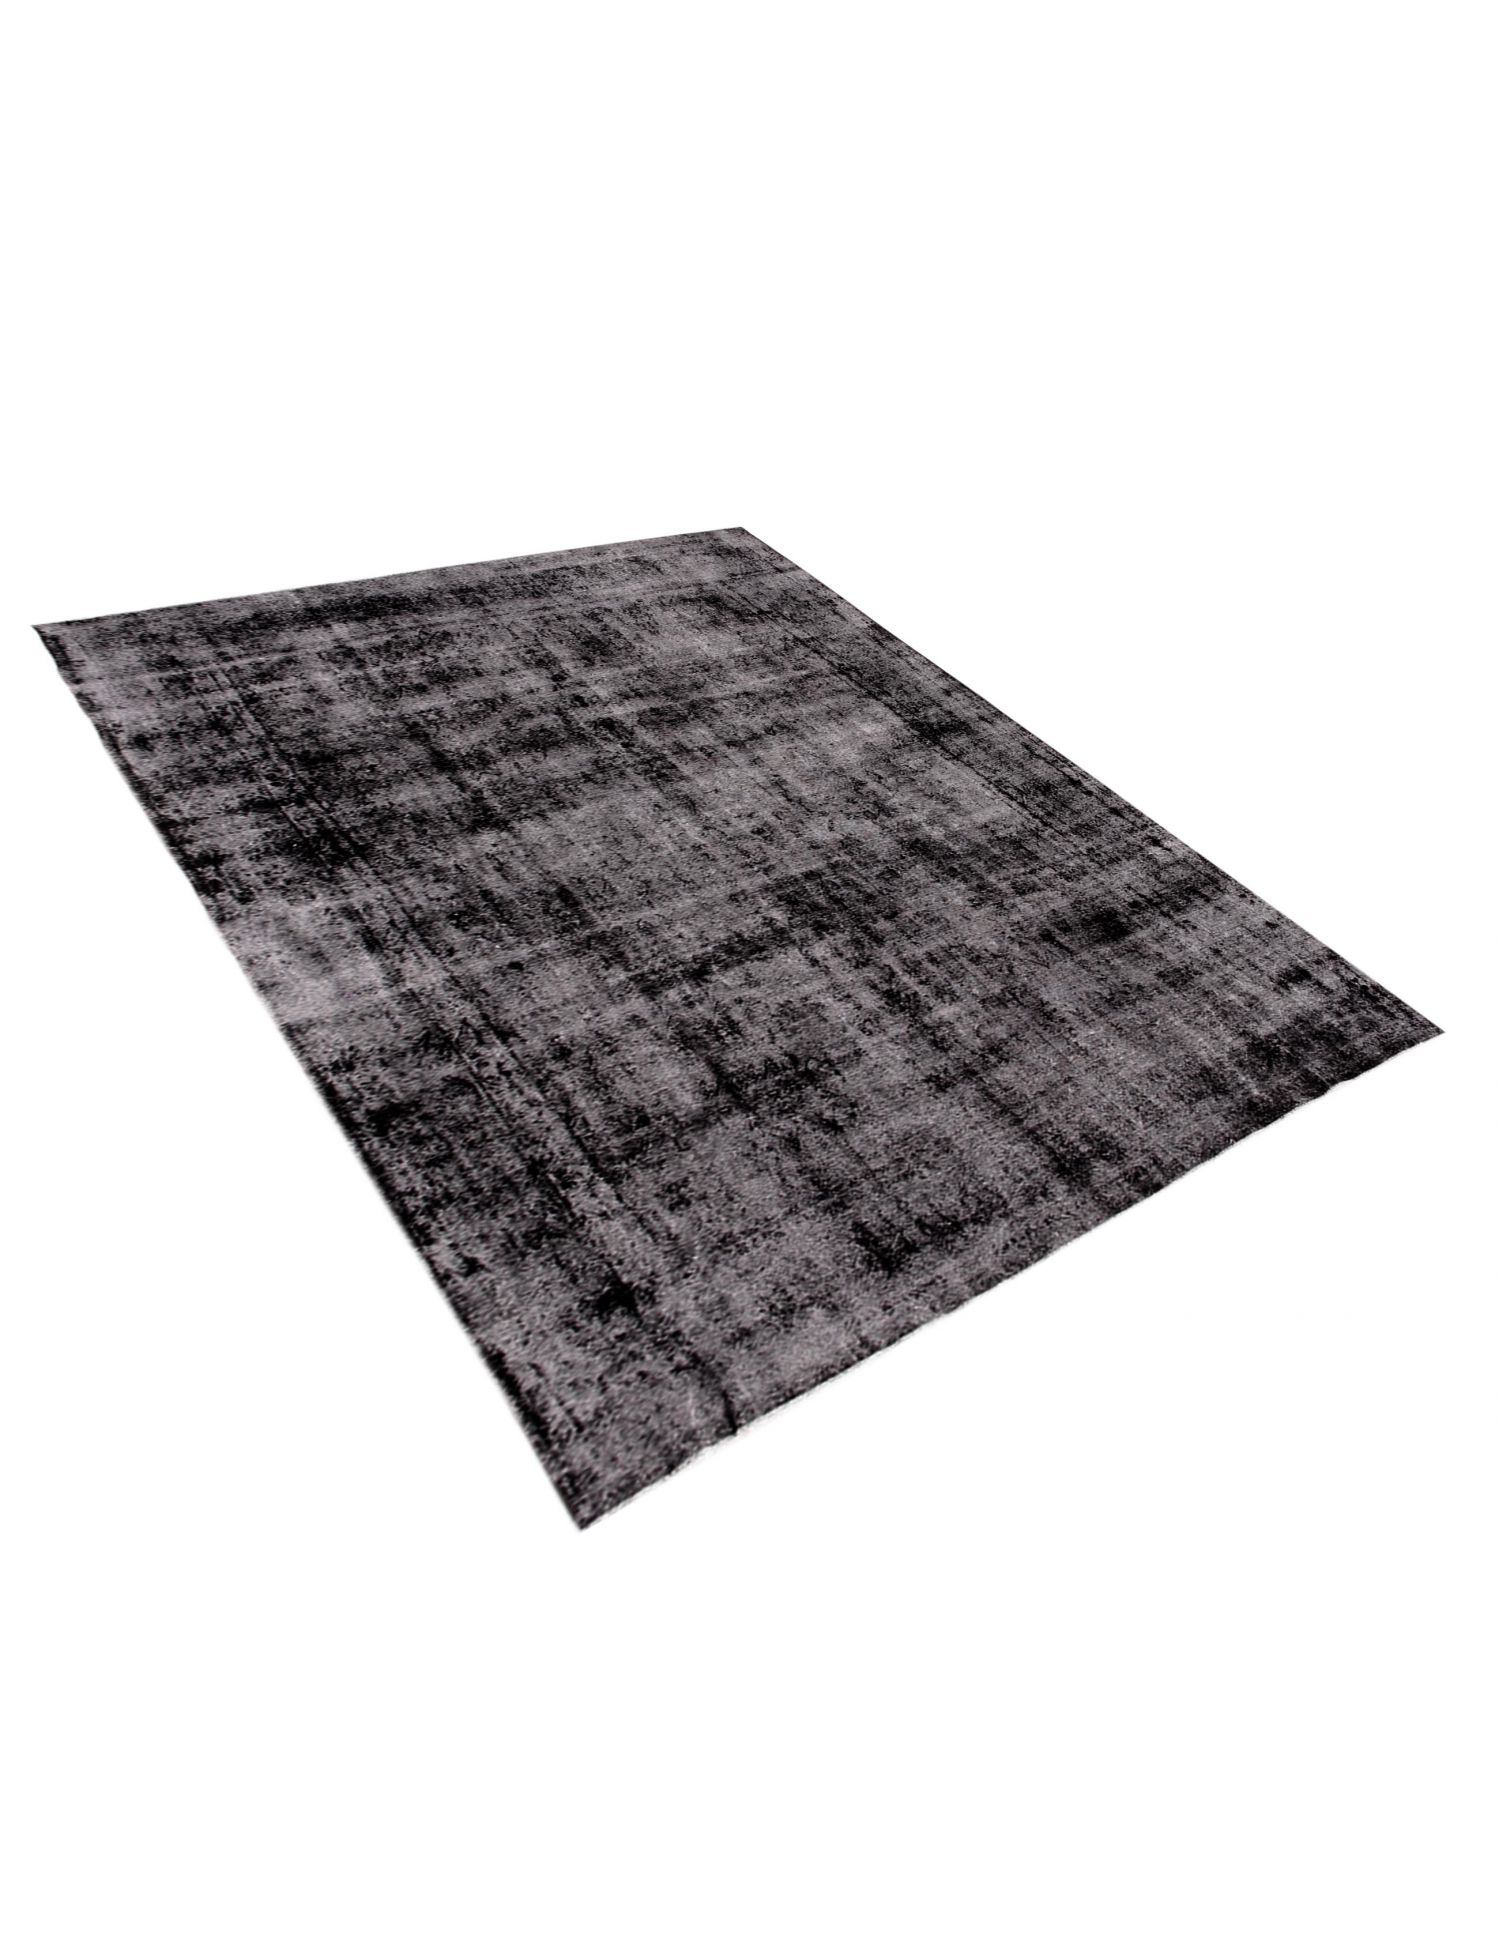 Persian Vintage Carpet  black <br/>440 x 300 cm